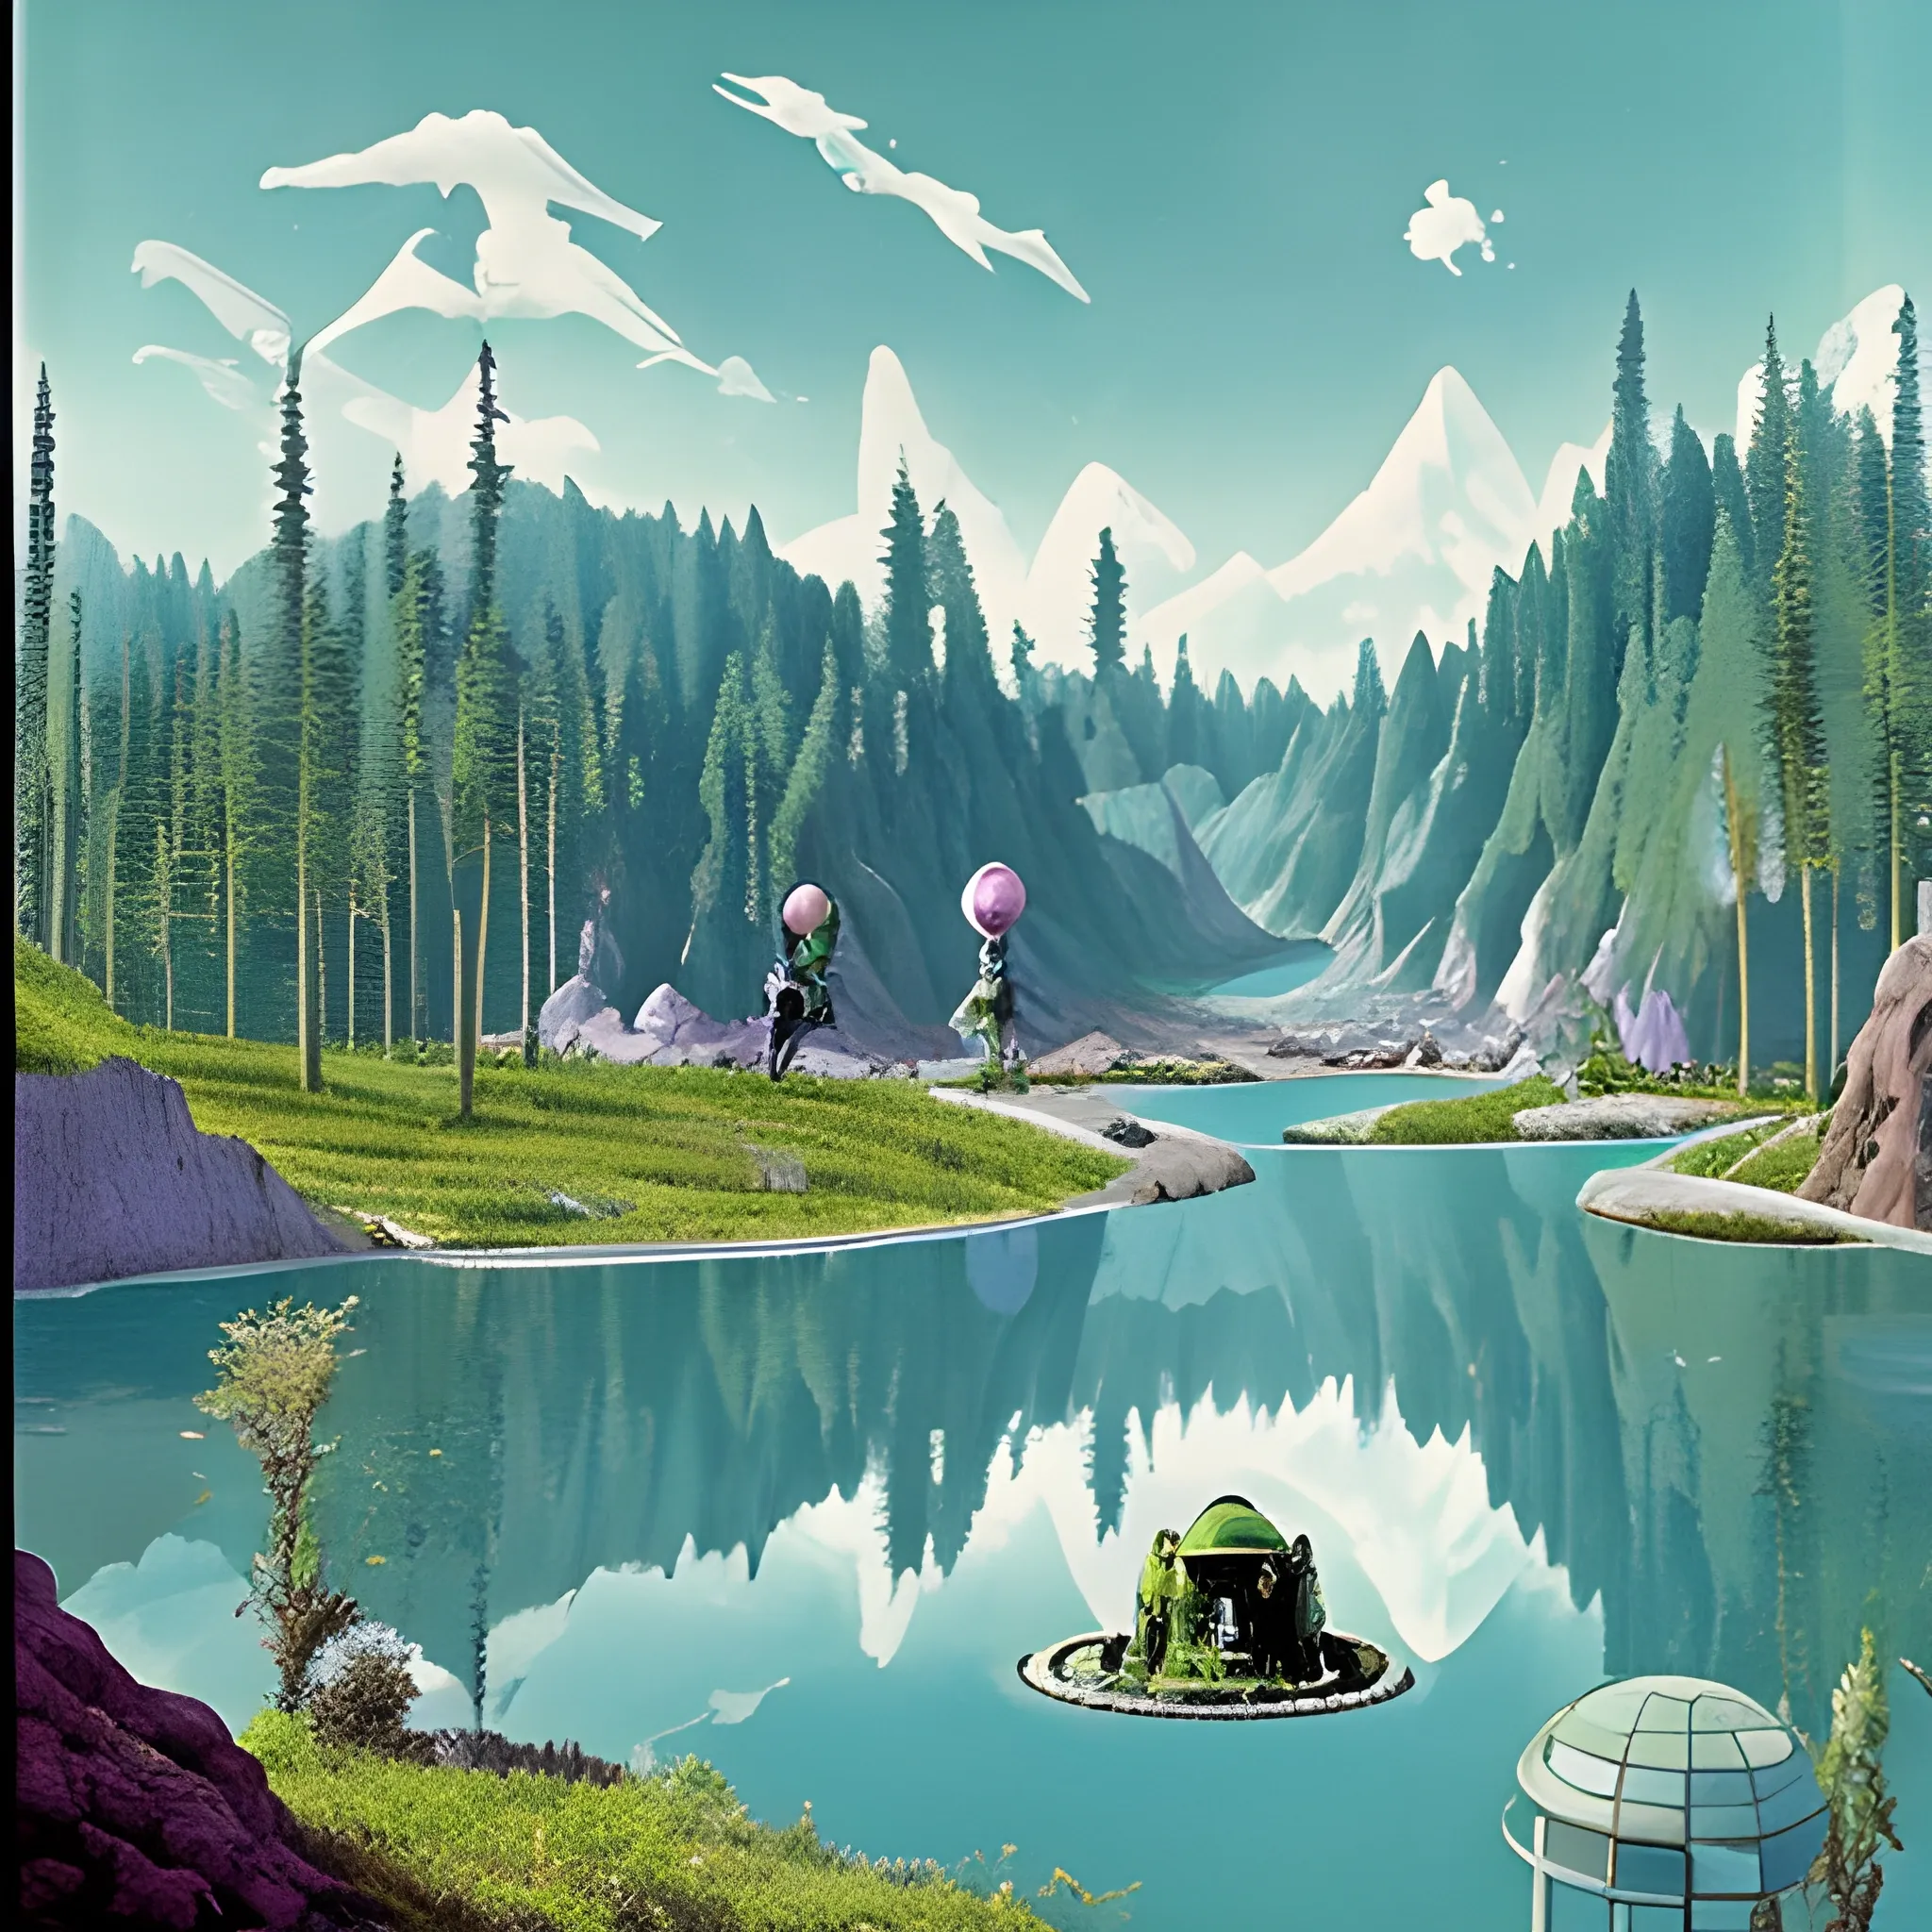 Paysage de science-fiction fantastique psychédélique très coloré, maisons futuristes, robots travailleurs, montagnes avec des chutes d'eau, animaux autour d'un lac au pied des montagne arboré de grand arbres millénaires  en arrière-plan 